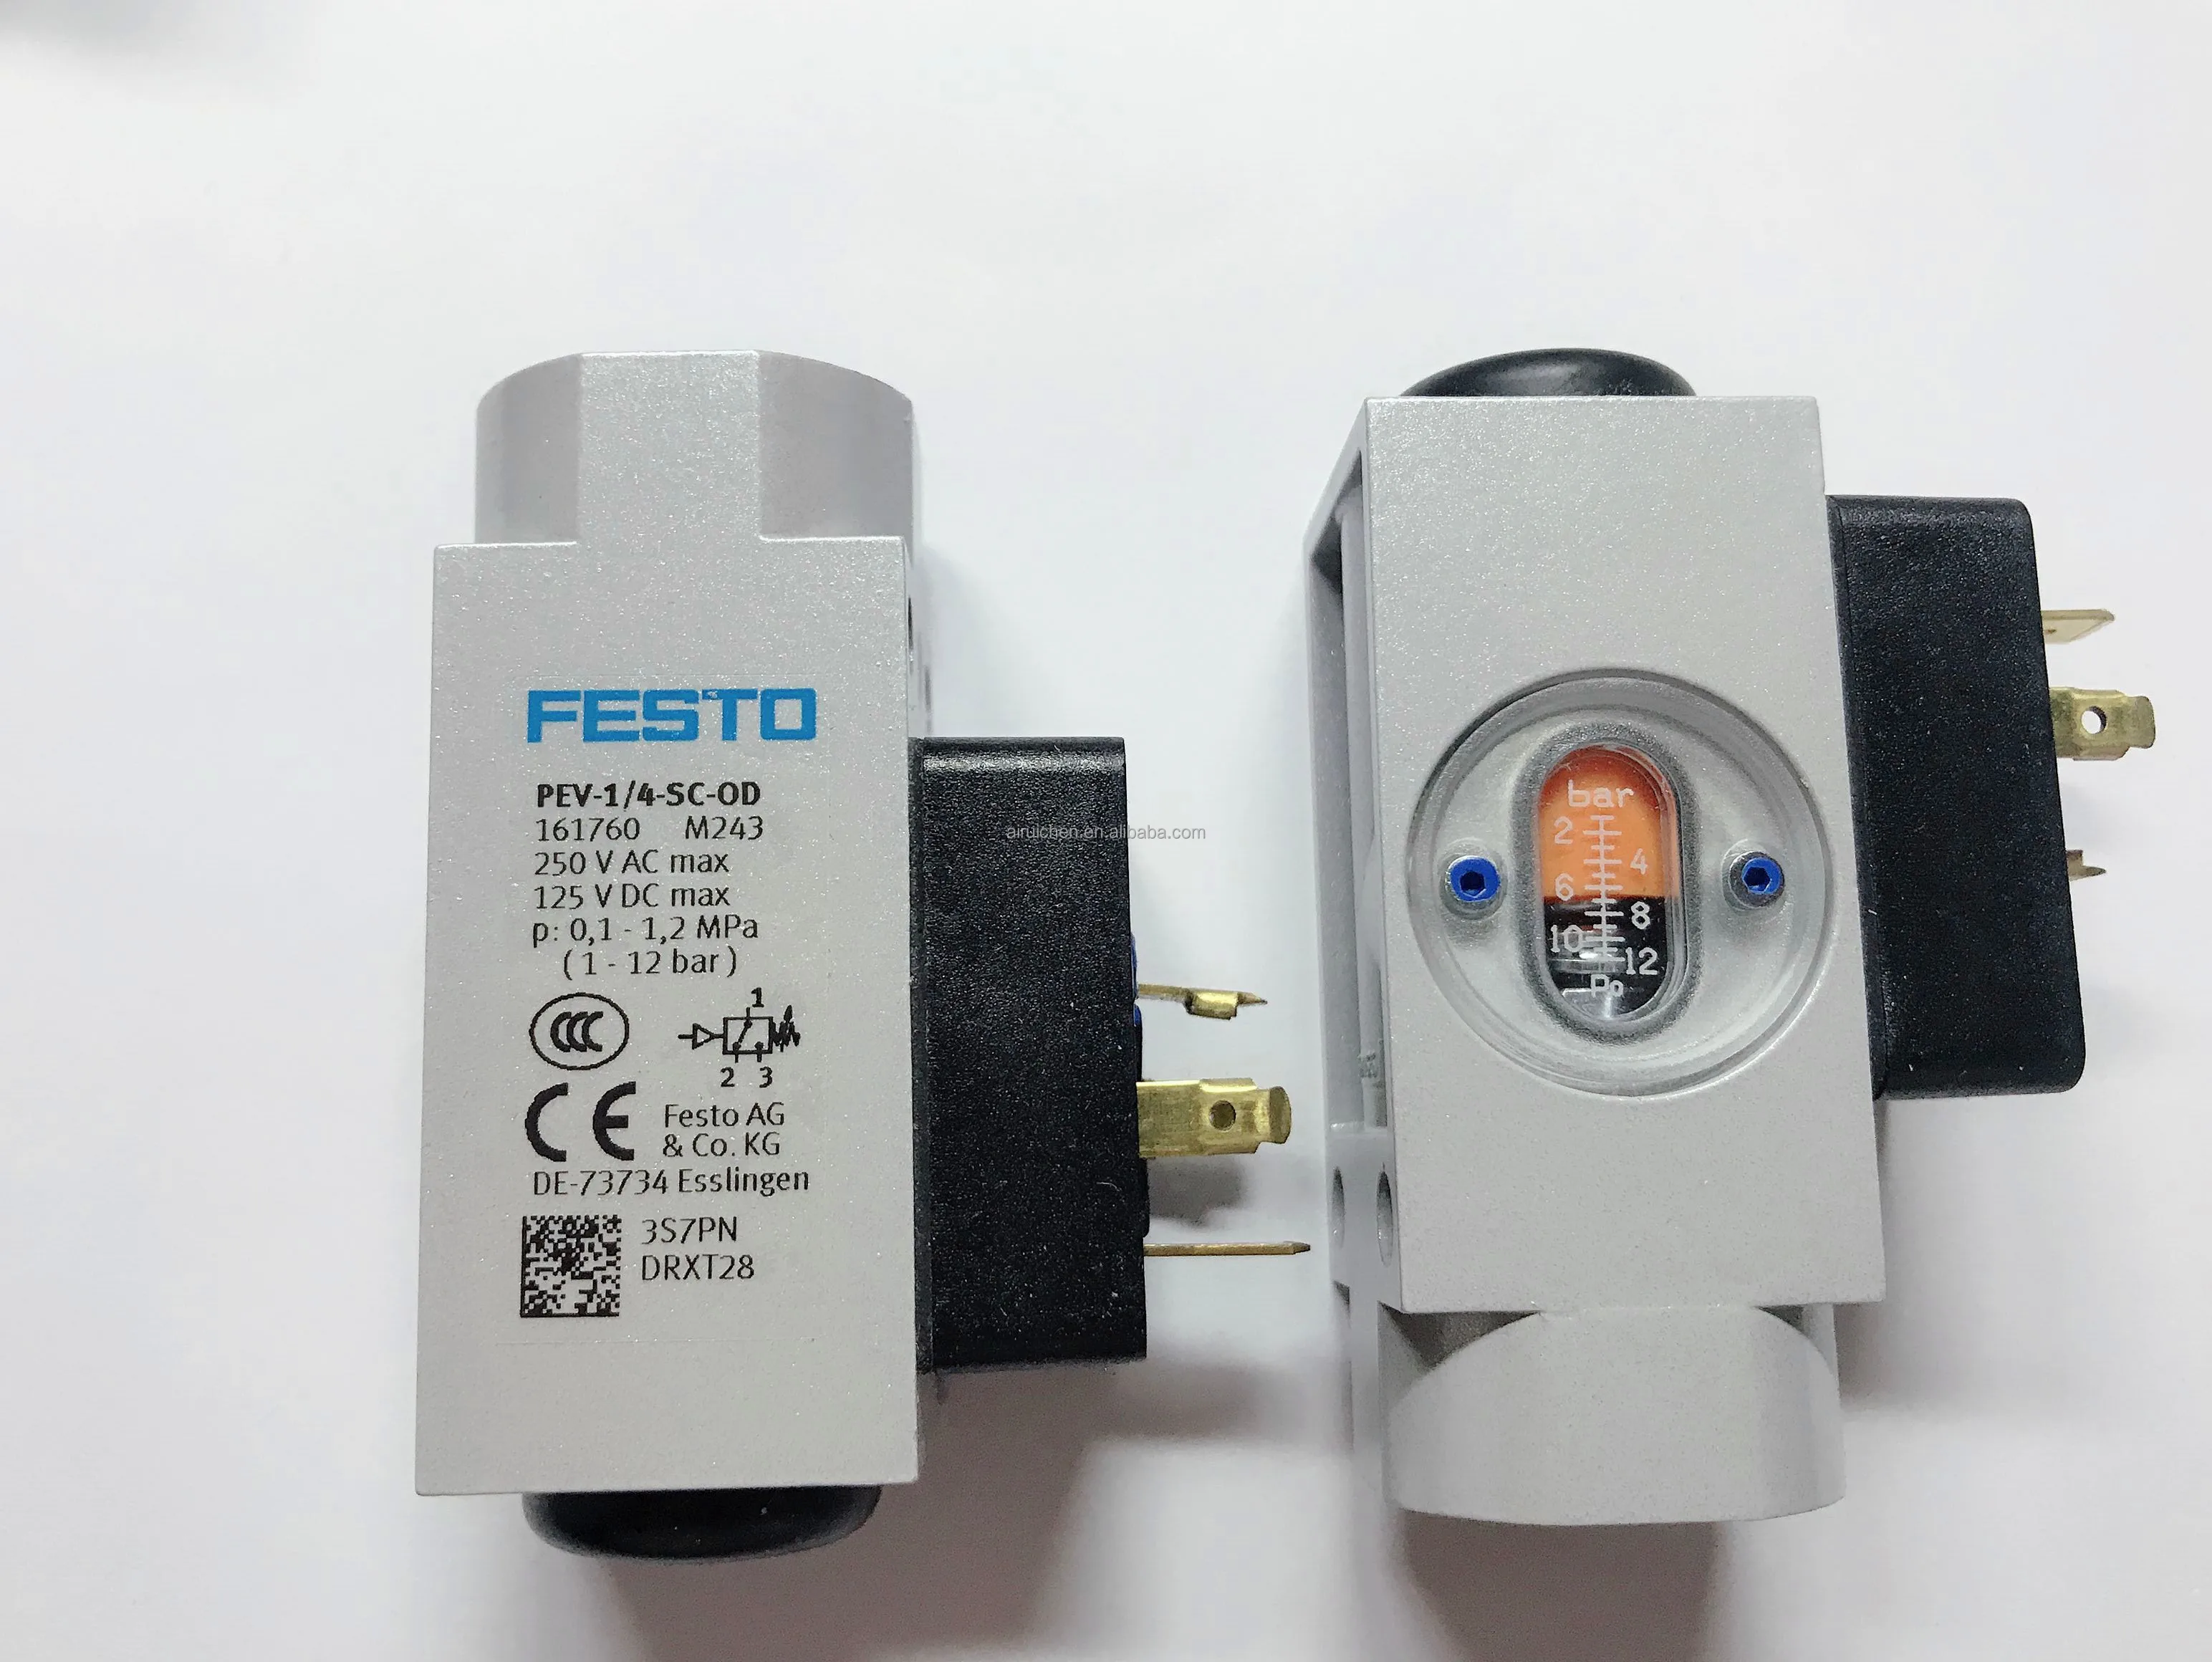 ONE FESTO solenoid valve PEV-1/4-SC-OD 161760 